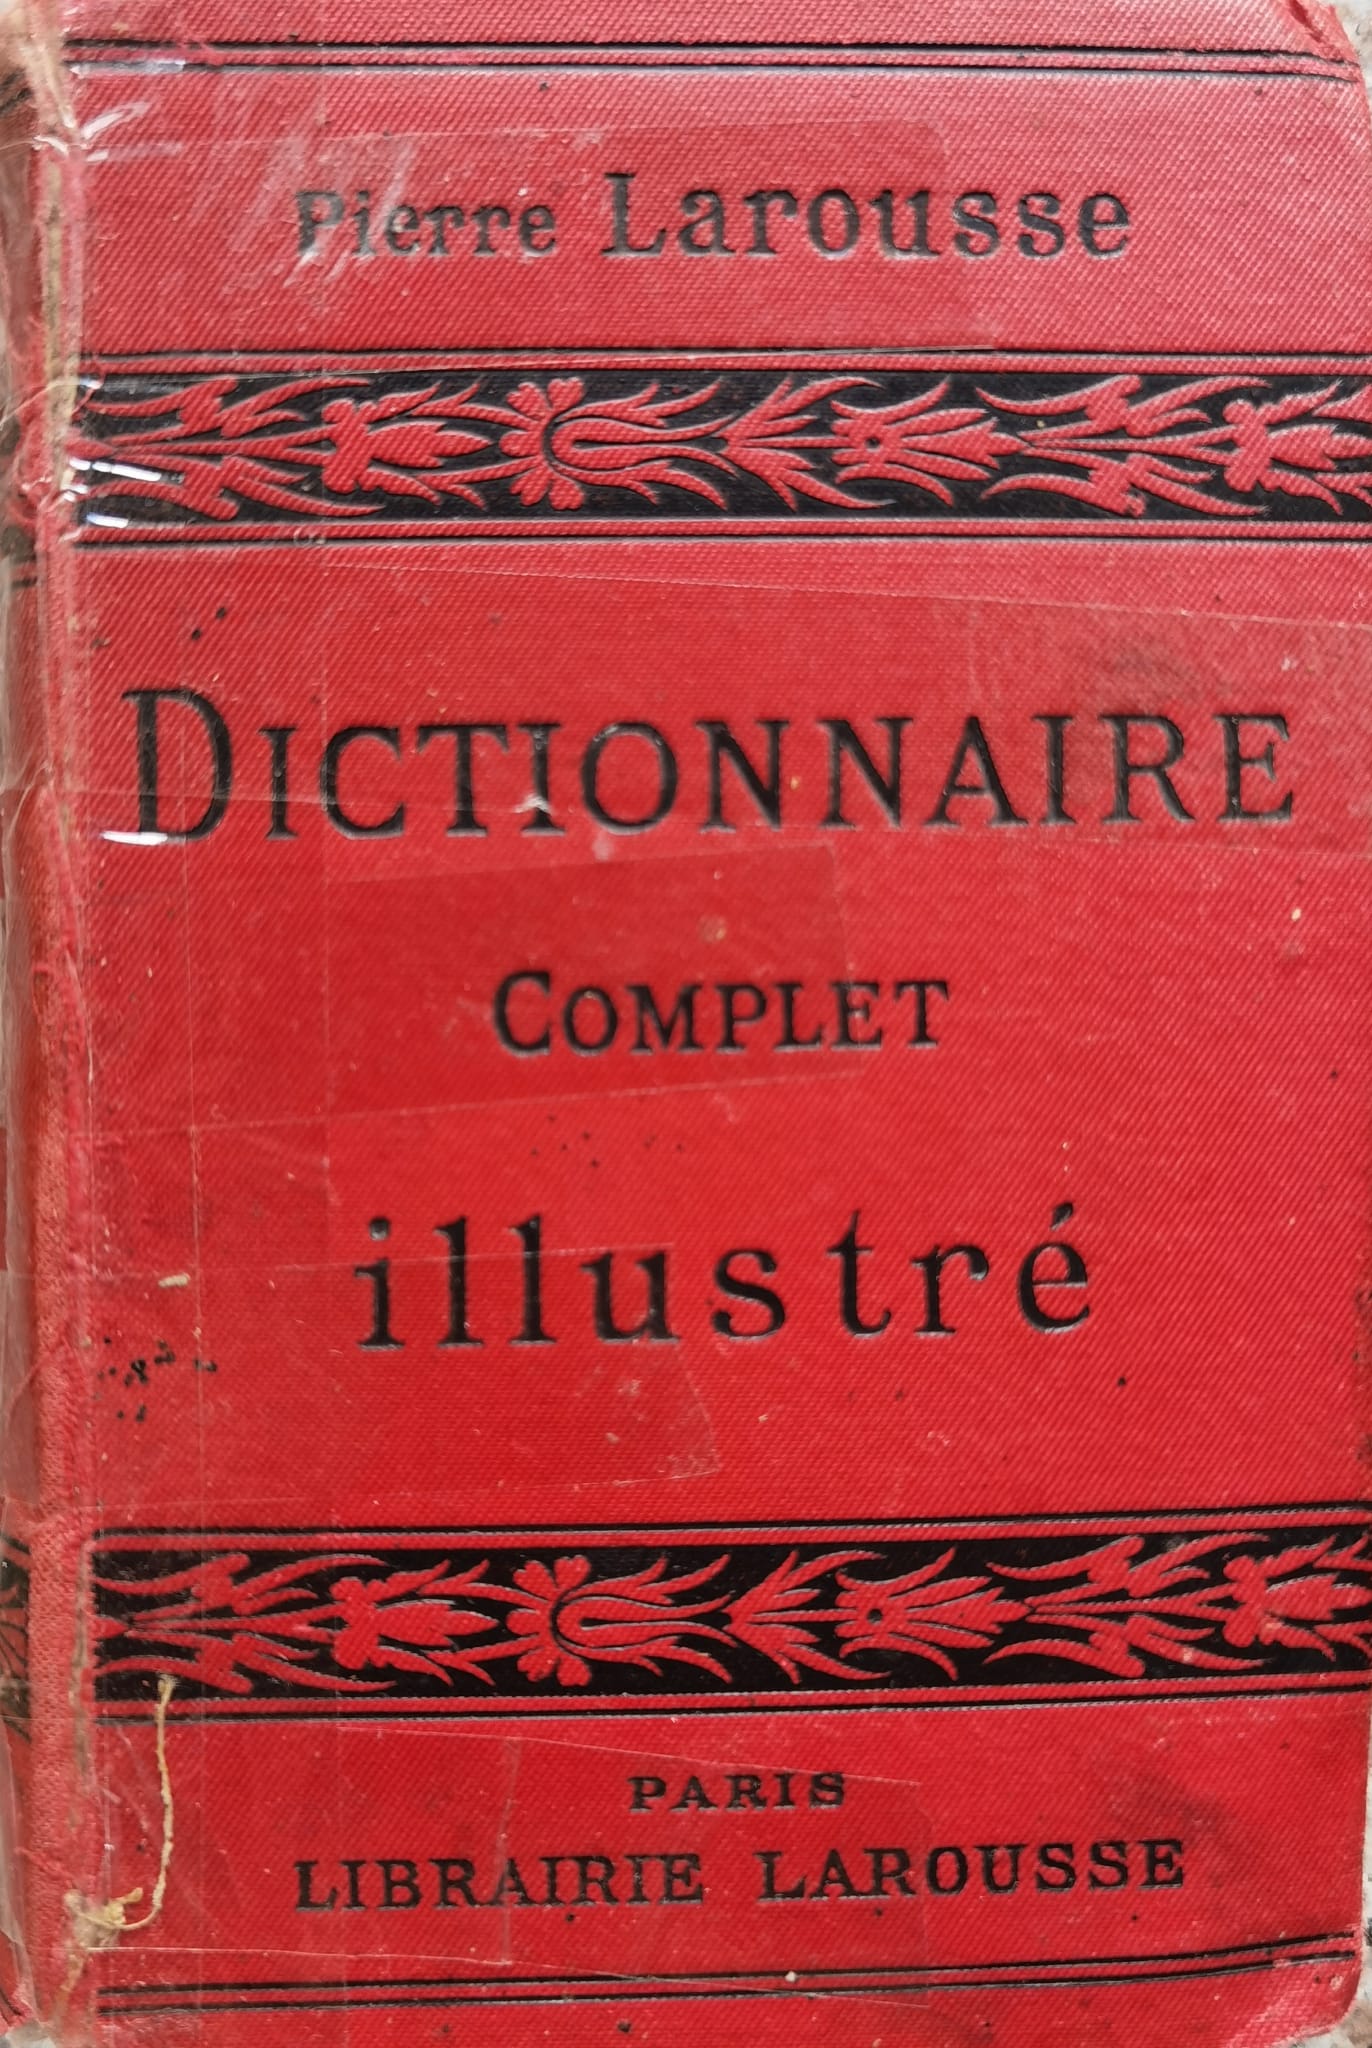 dictionnaire complet illustre                                                                        p. larousse                                                                                         